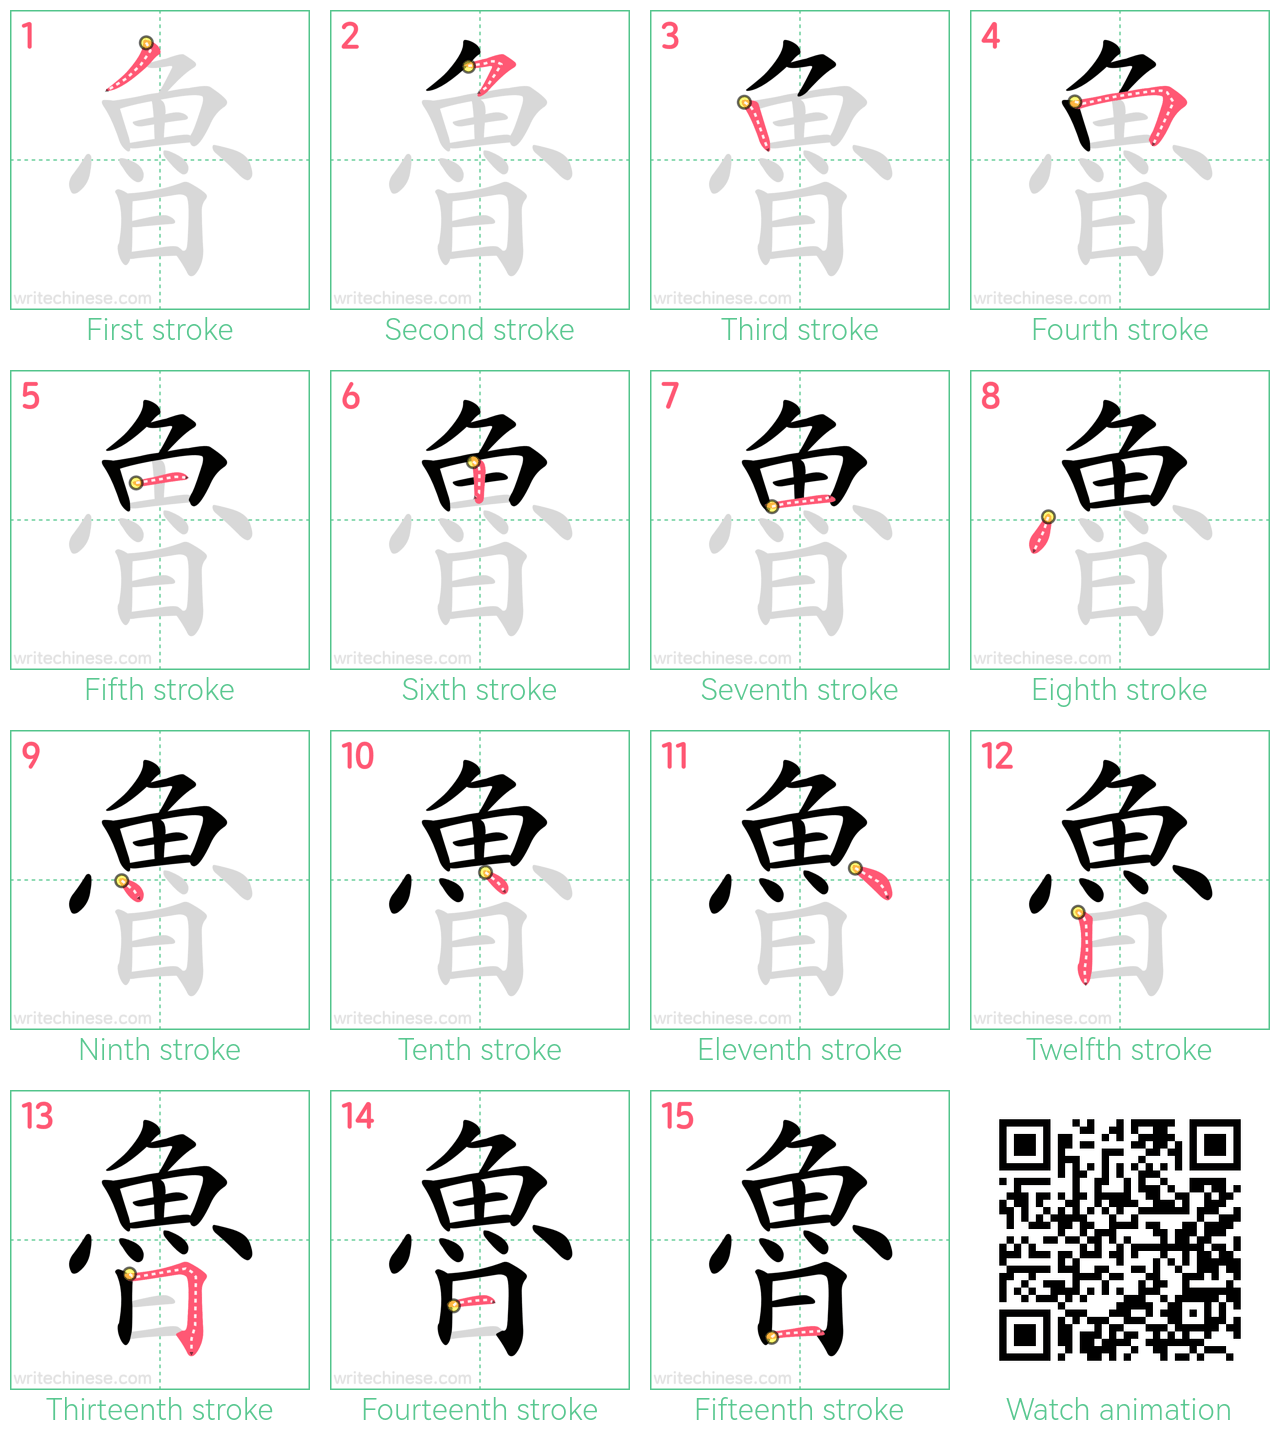 魯 step-by-step stroke order diagrams